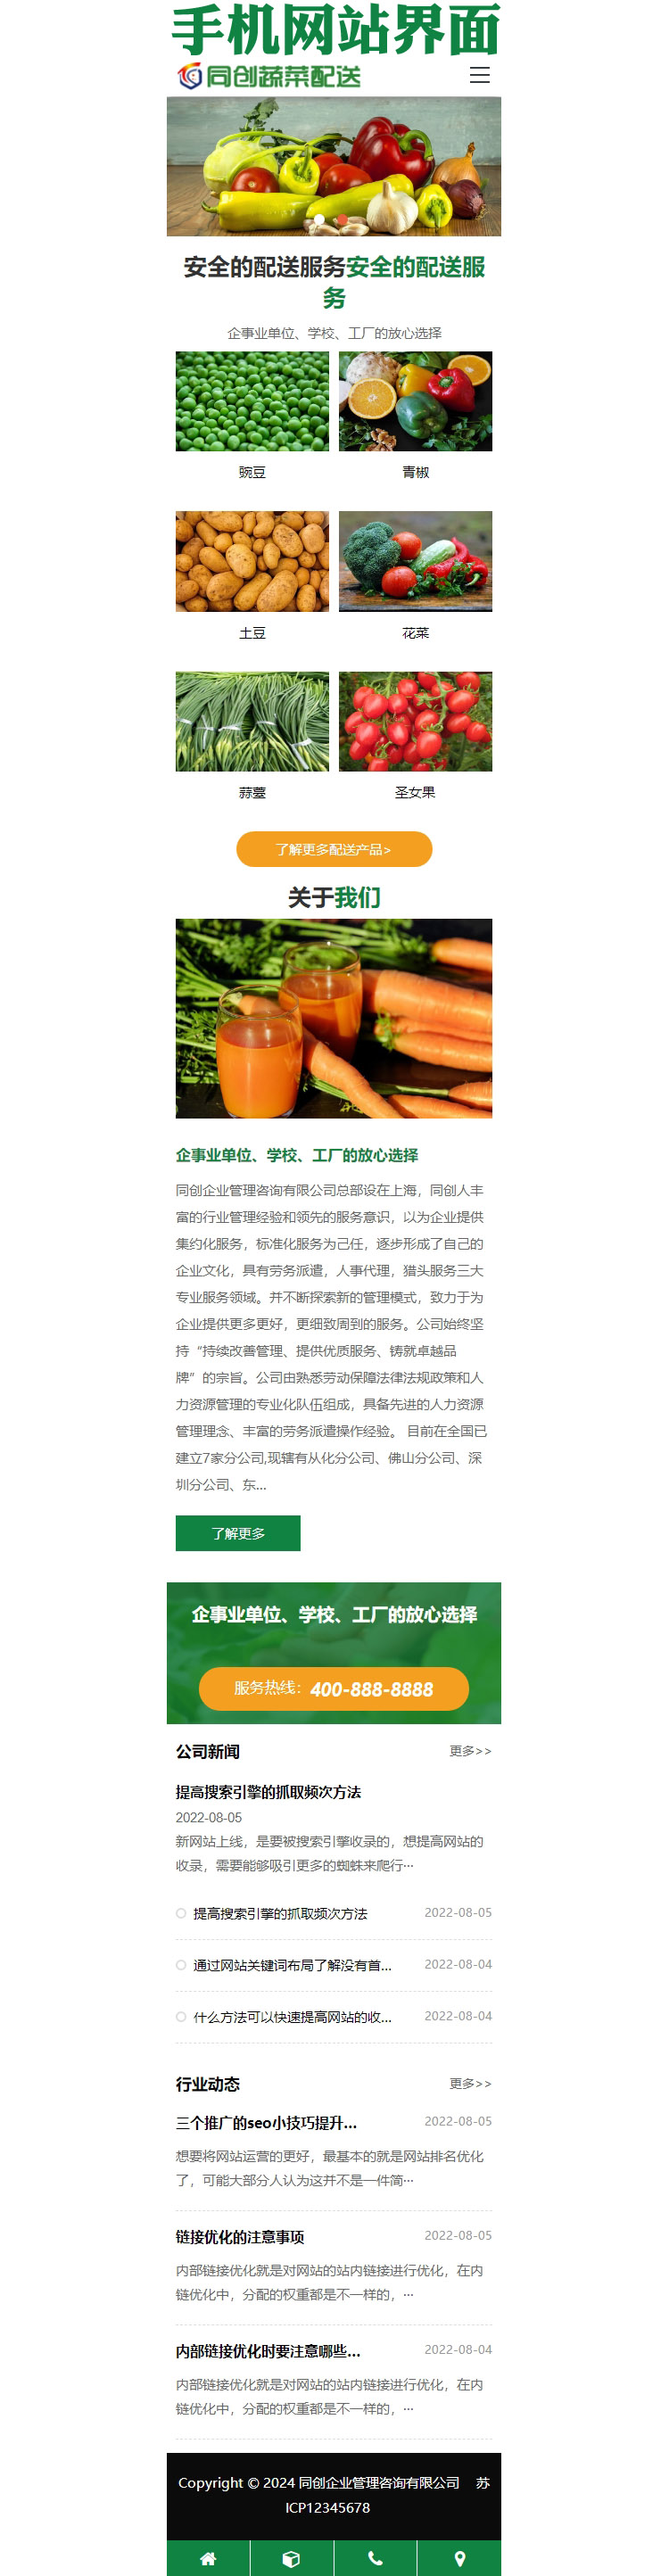 绿色果蔬配送网站源码模板程序-BY017-3